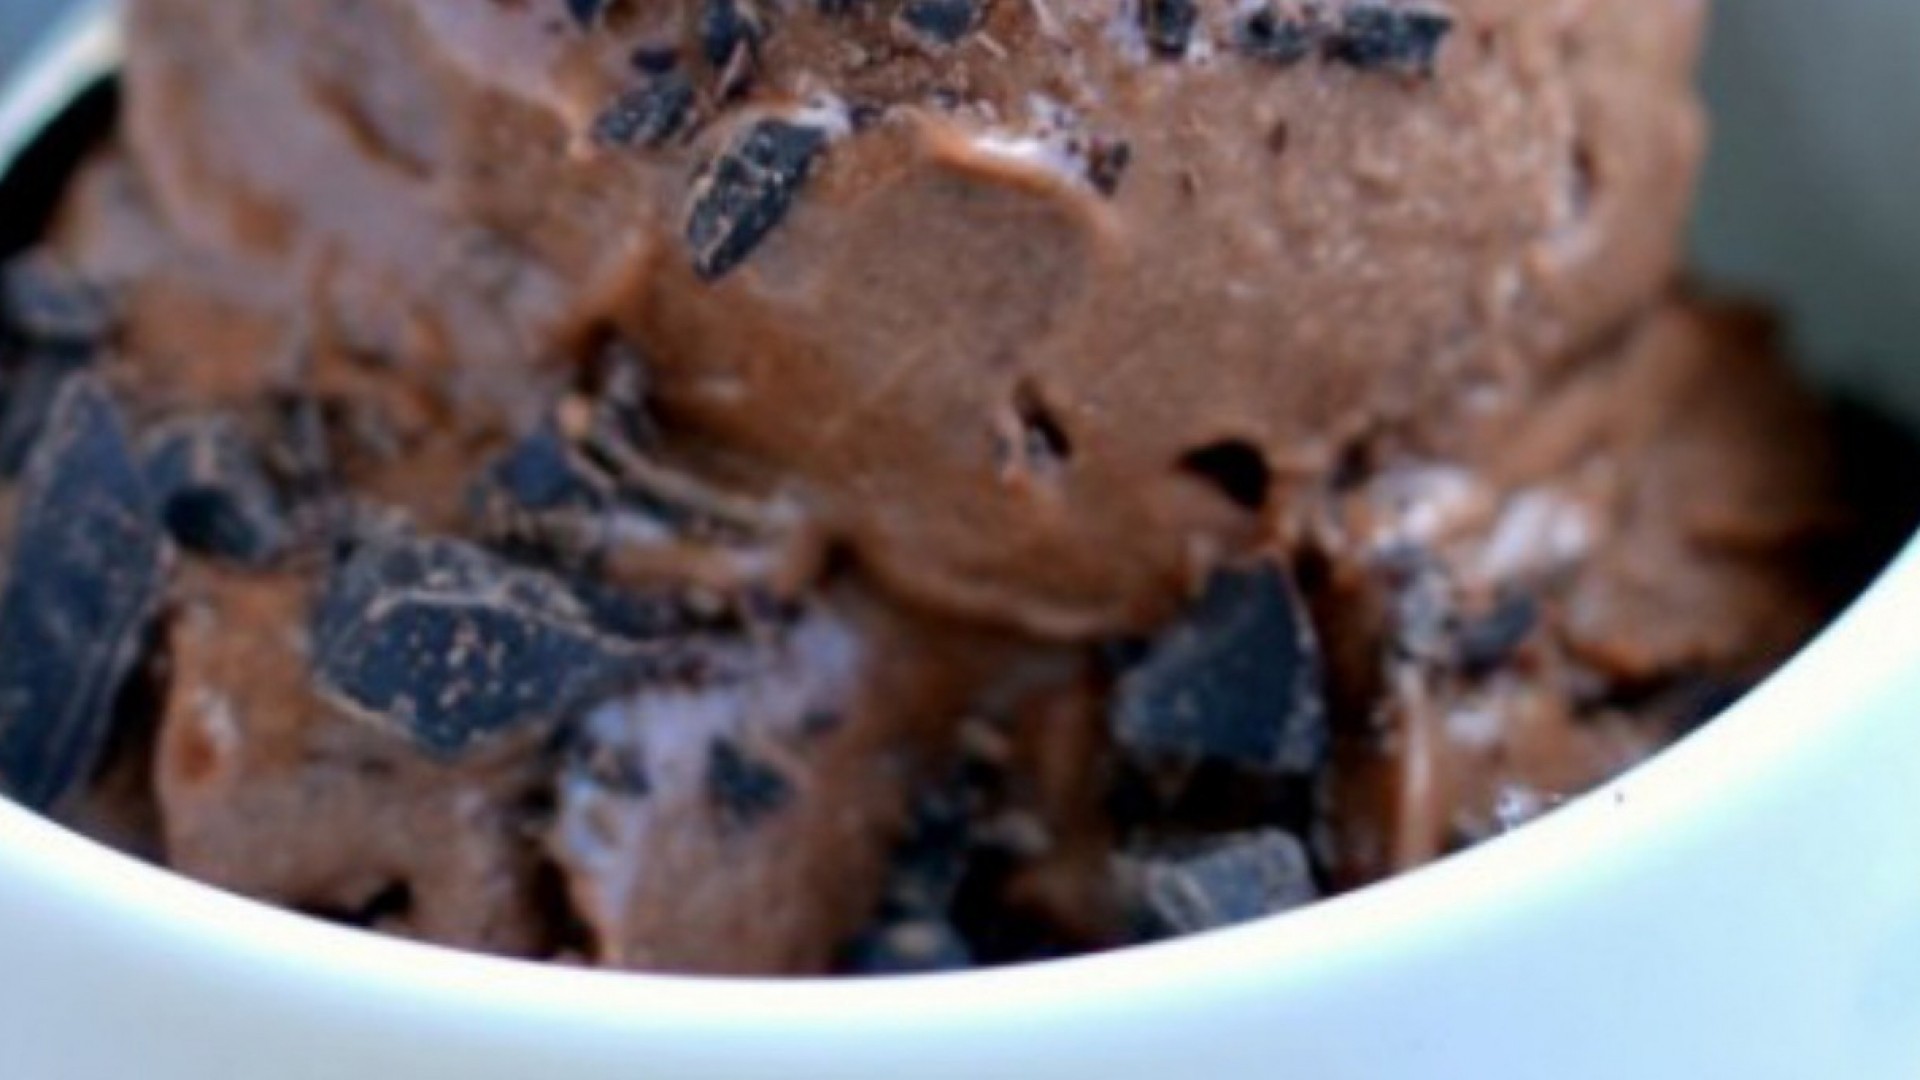 Шоколадное мороженое за 5 минут